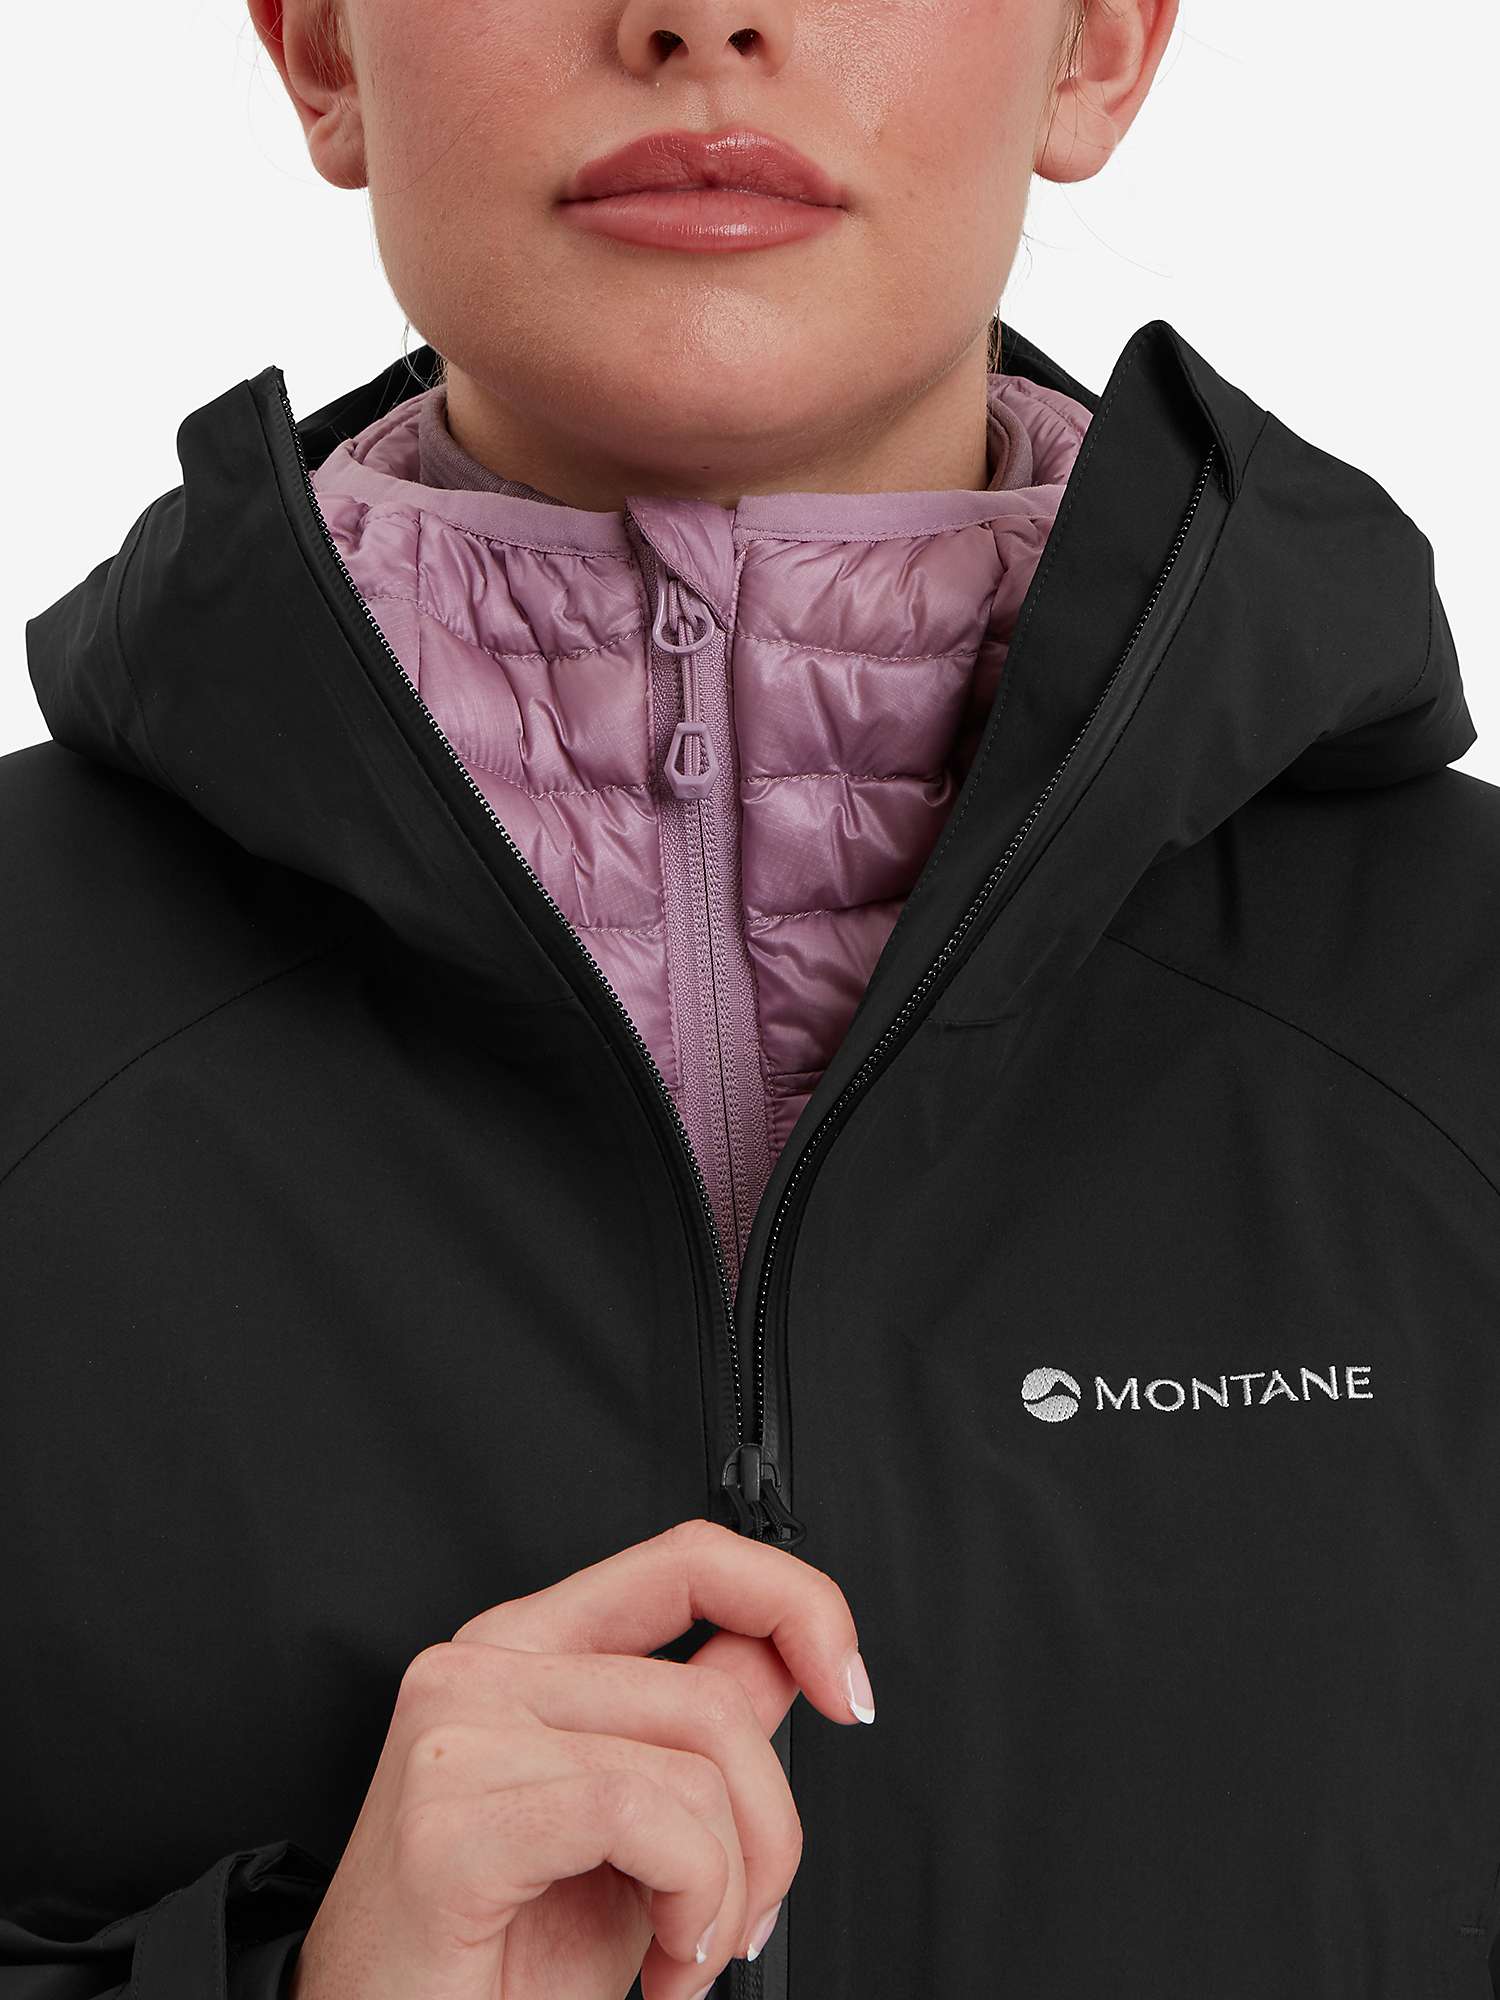 Buy Montane Solution Waterproof Jacket, Black Online at johnlewis.com